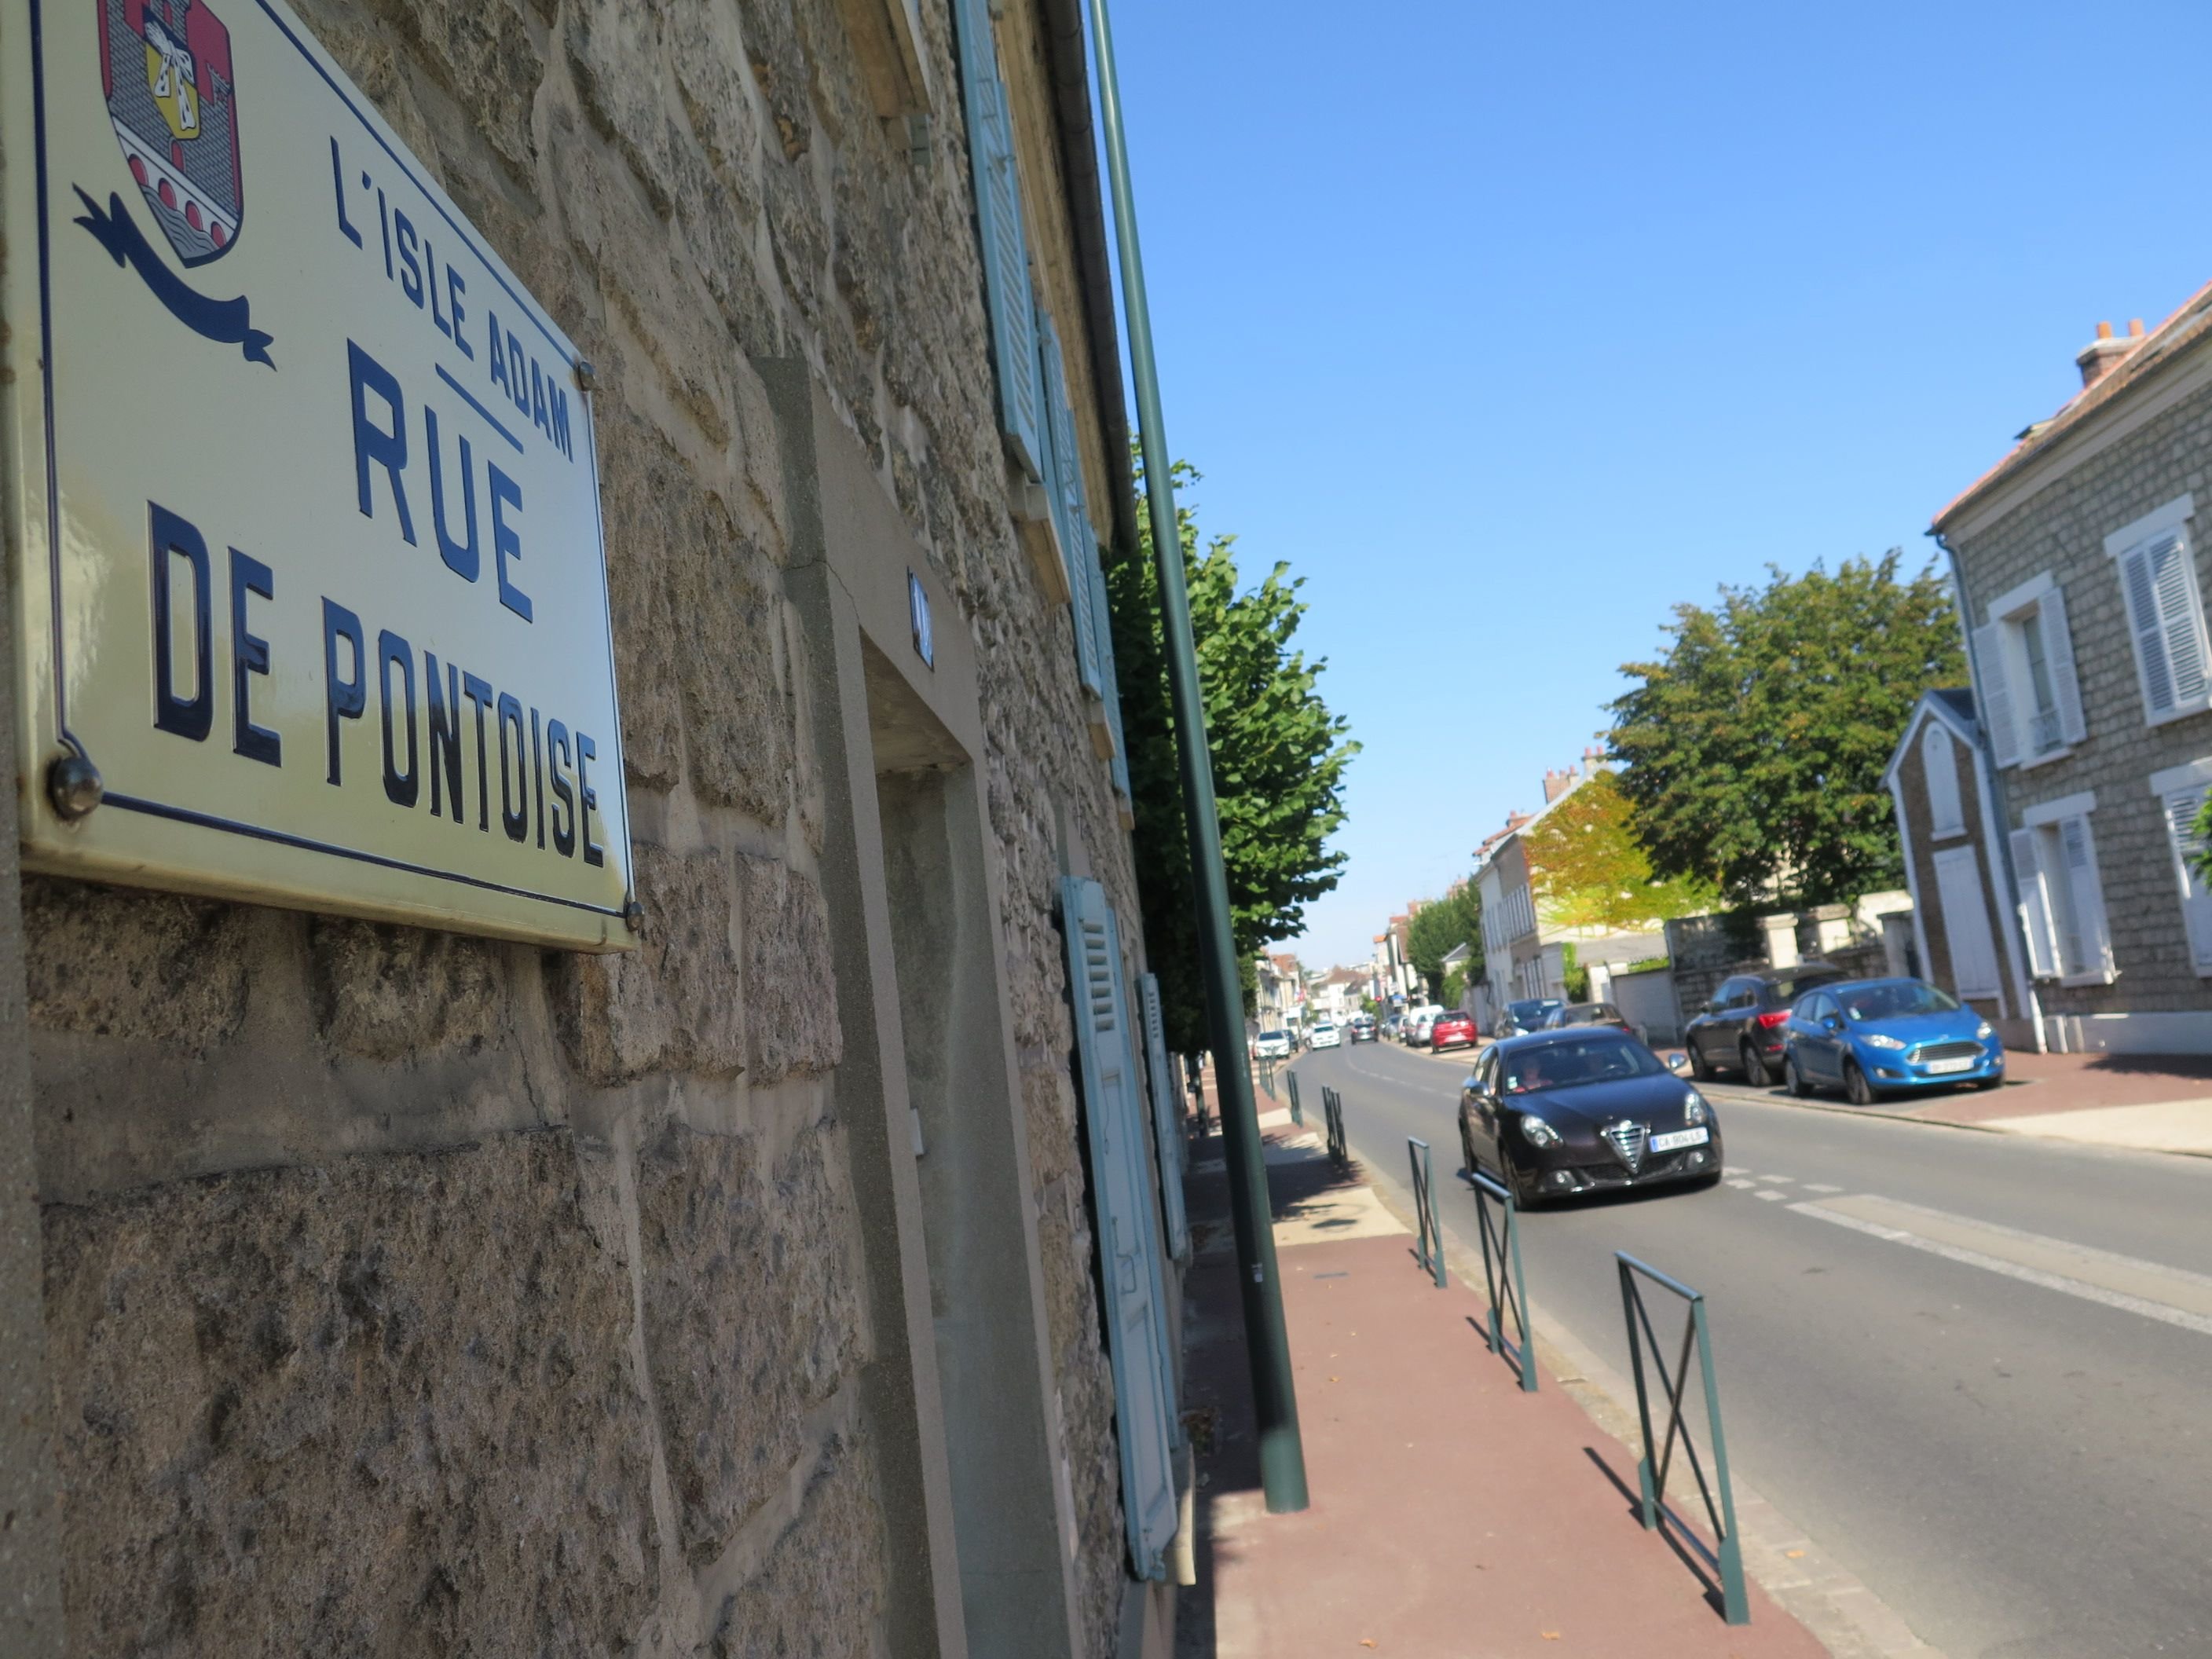 Les riverains de la rue de Pontoise refusent de voir le nom de leur rue changer pour rendre hommage à l'ex-président Valéry Giscard d'Estaing. LP/Marie Persidat